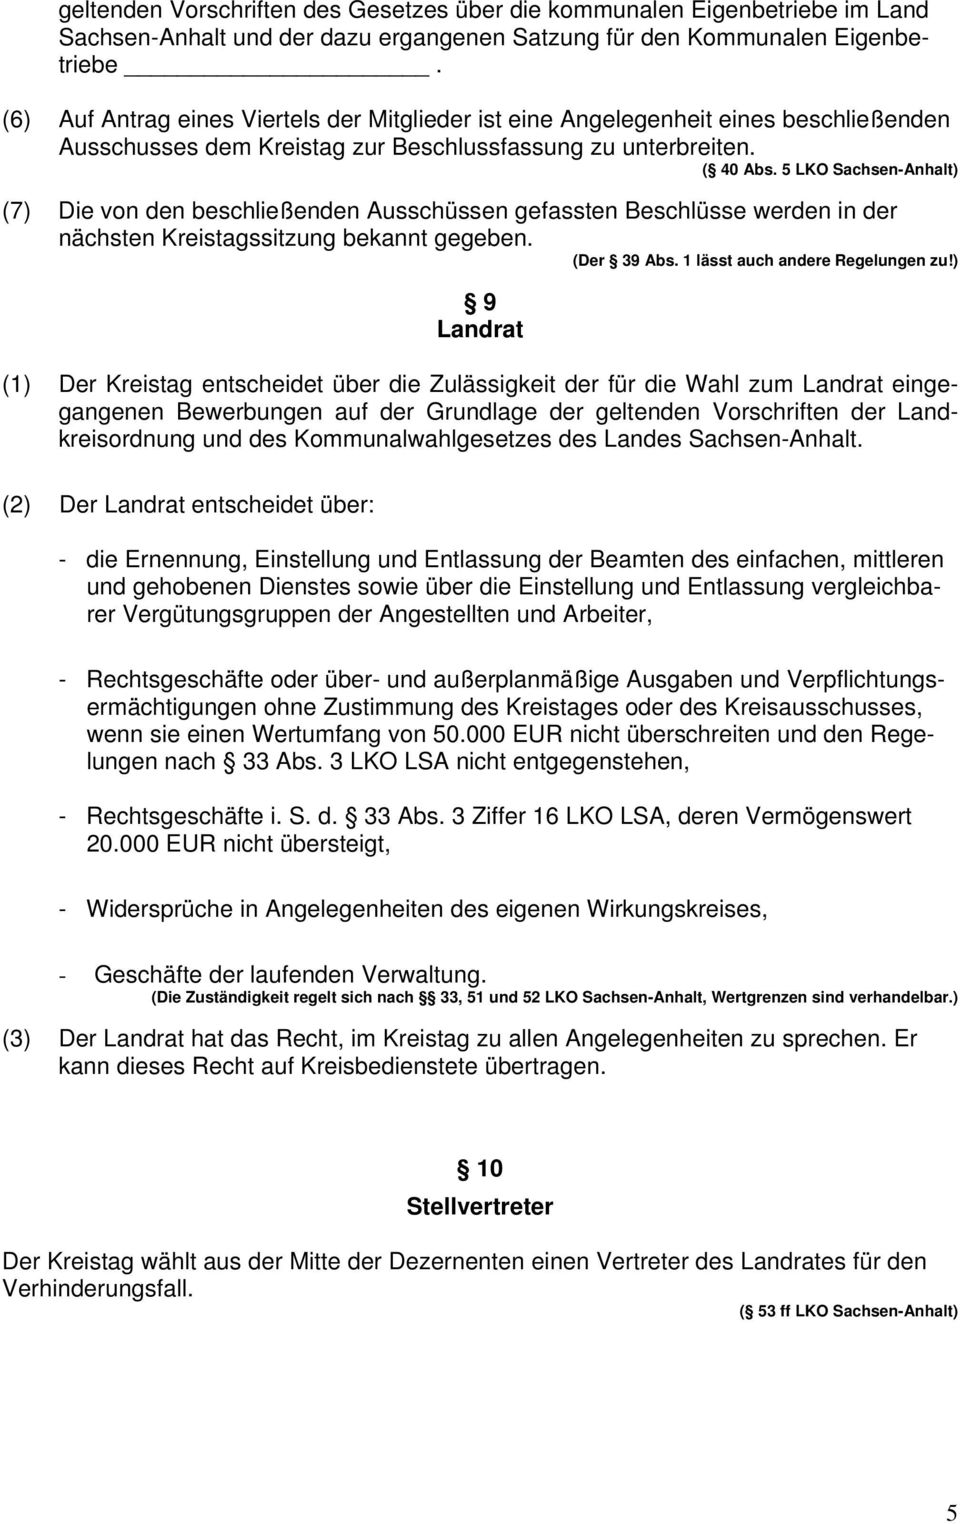 5 LKO Sachsen-Anhalt) (7) Die von den beschließenden Ausschüssen gefassten Beschlüsse werden in der nächsten Kreistagssitzung bekannt gegeben. (Der 39 Abs. 1 lässt auch andere Regelungen zu!